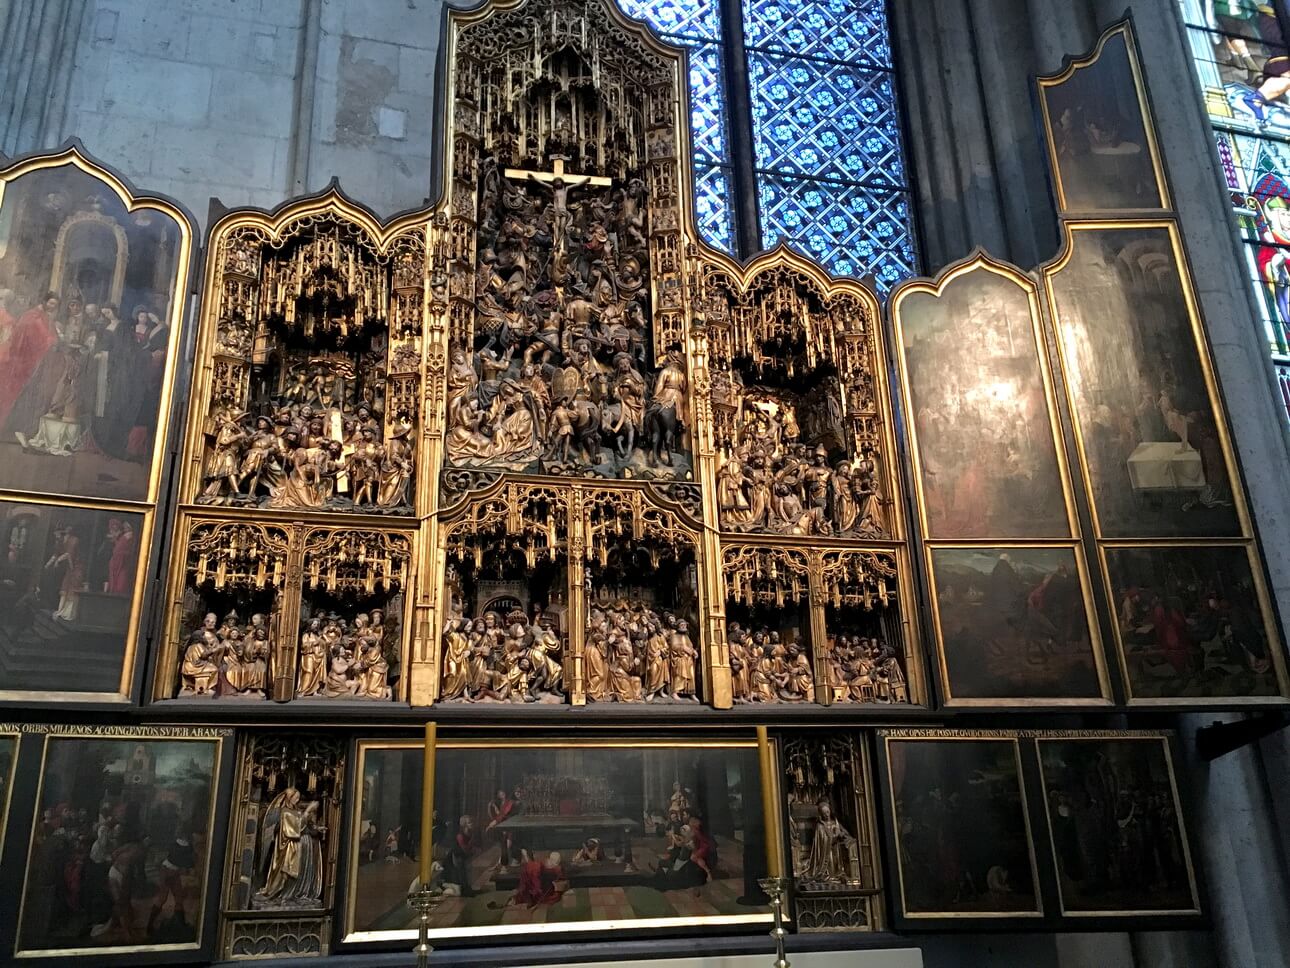 Interior de la catedral gótica de Colonia, Alemania. Patrimonio de la Humanidad por la UNESCO.